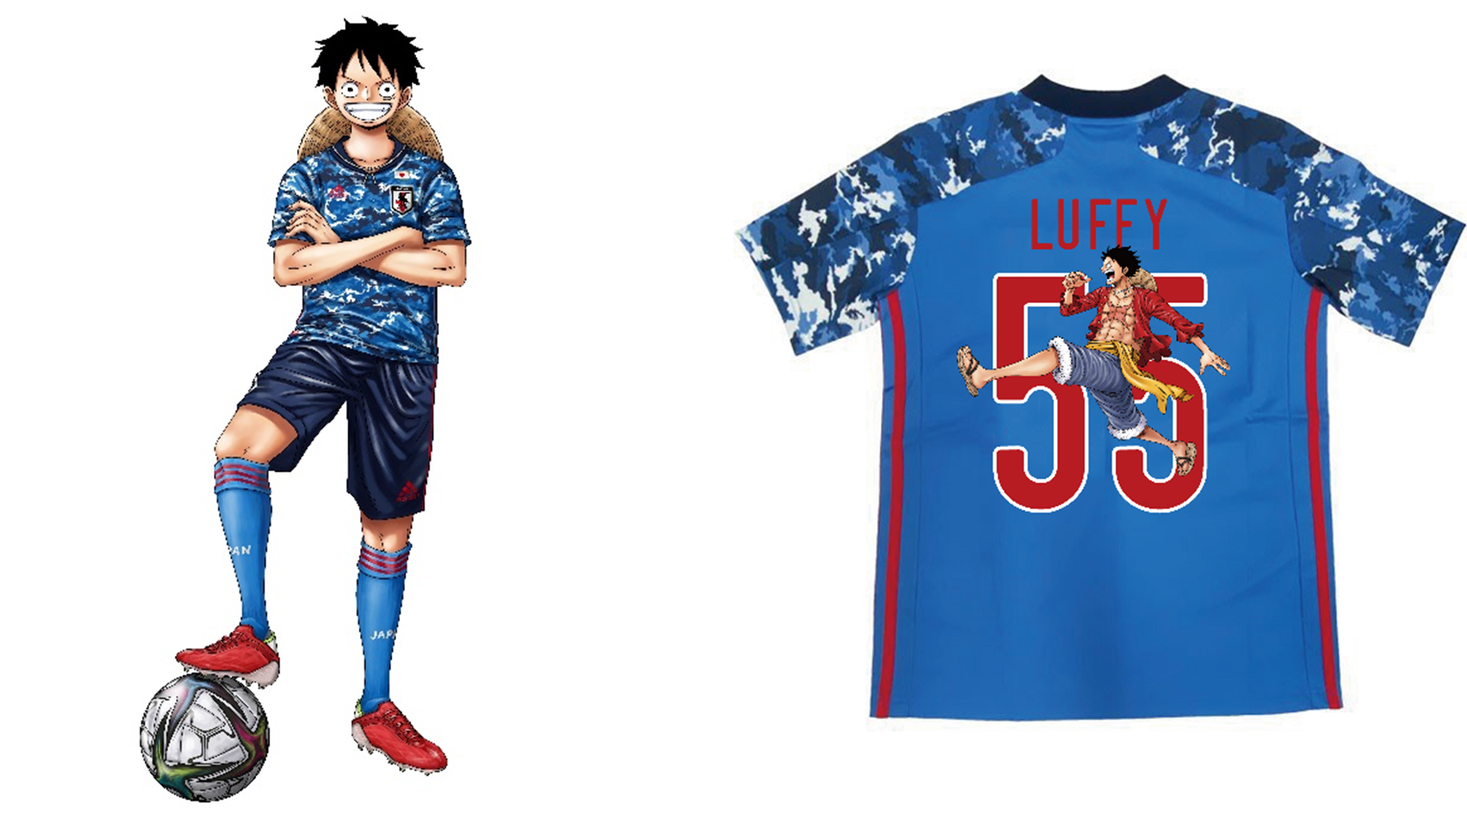 大人気tvアニメ One Piece 限定プリントのサッカー日本代表ユニフォームが登場麦わらの一味をはじめ総勢8キャラクターをあしらった特別仕様に アディダス ジャパン株式会社のプレスリリース